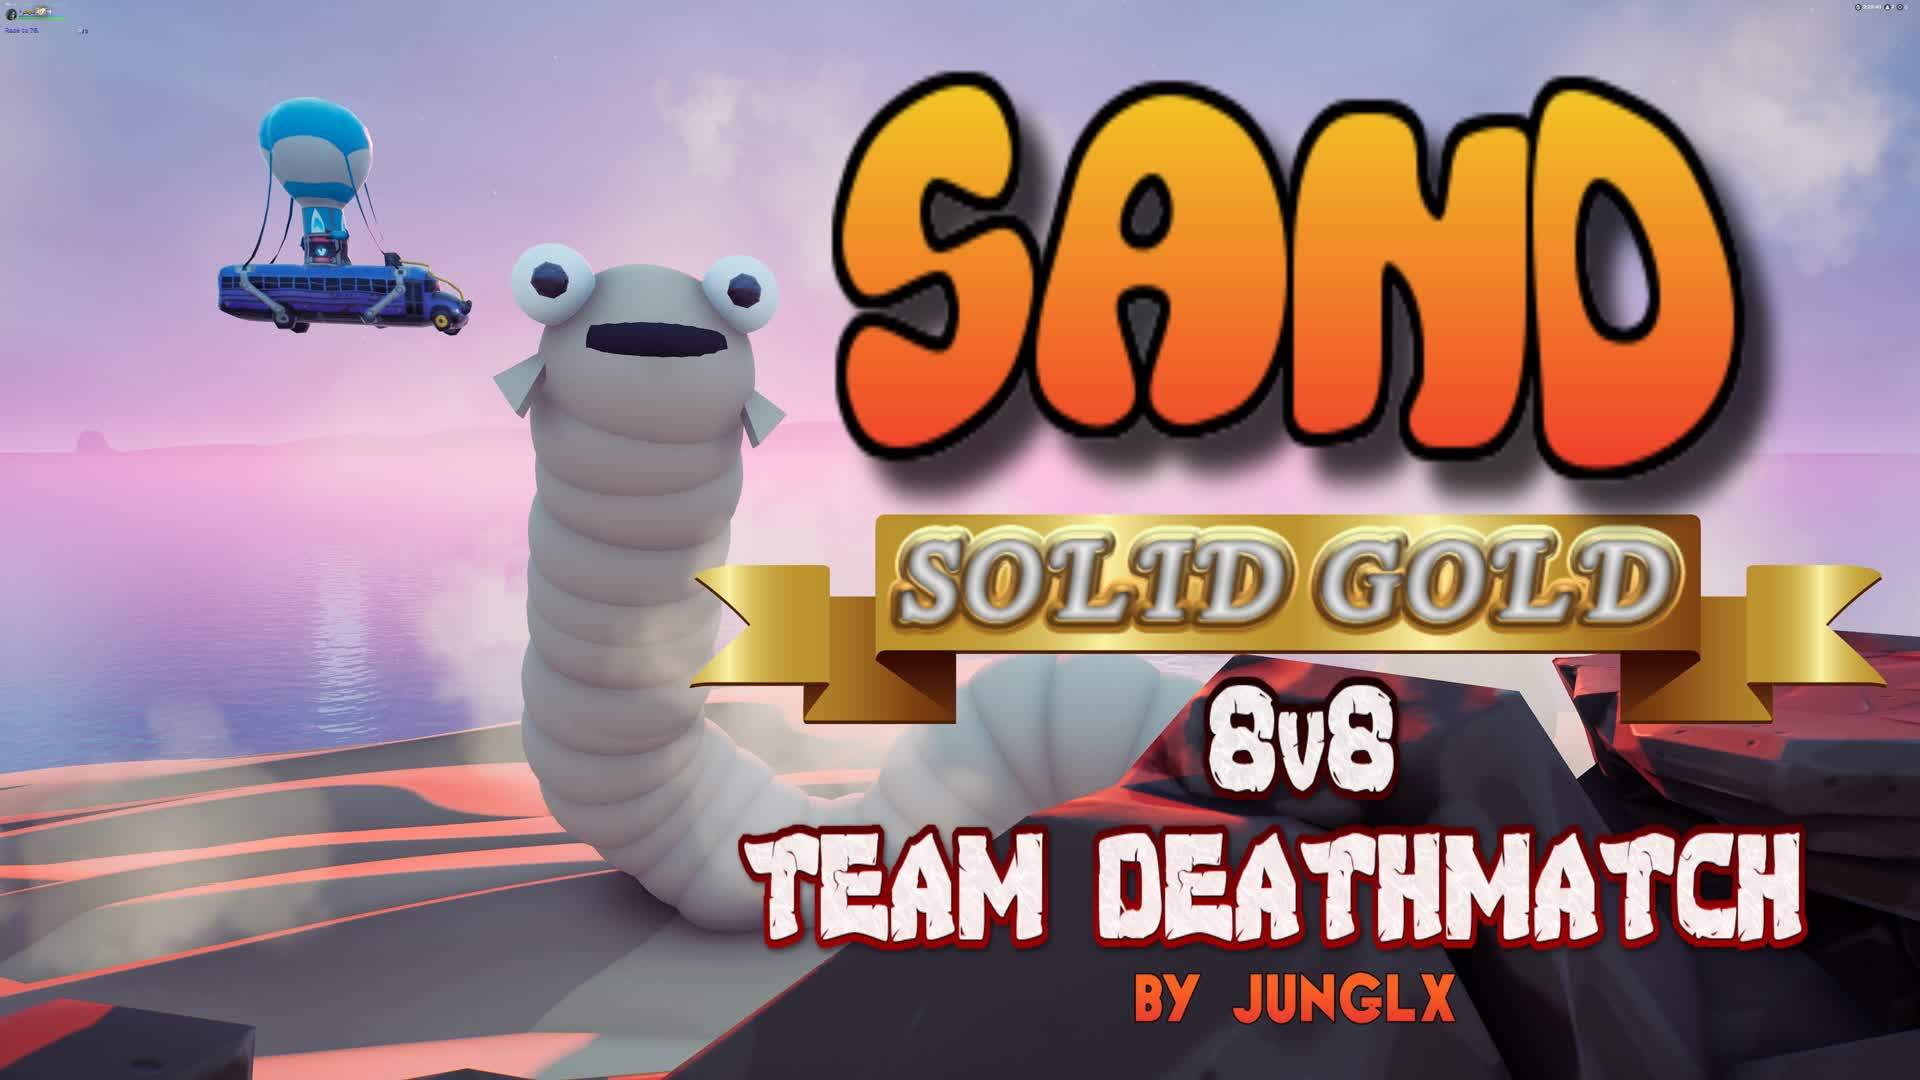 SAND - SOLID GOLD 8V8 TEAM DEATHMATCH